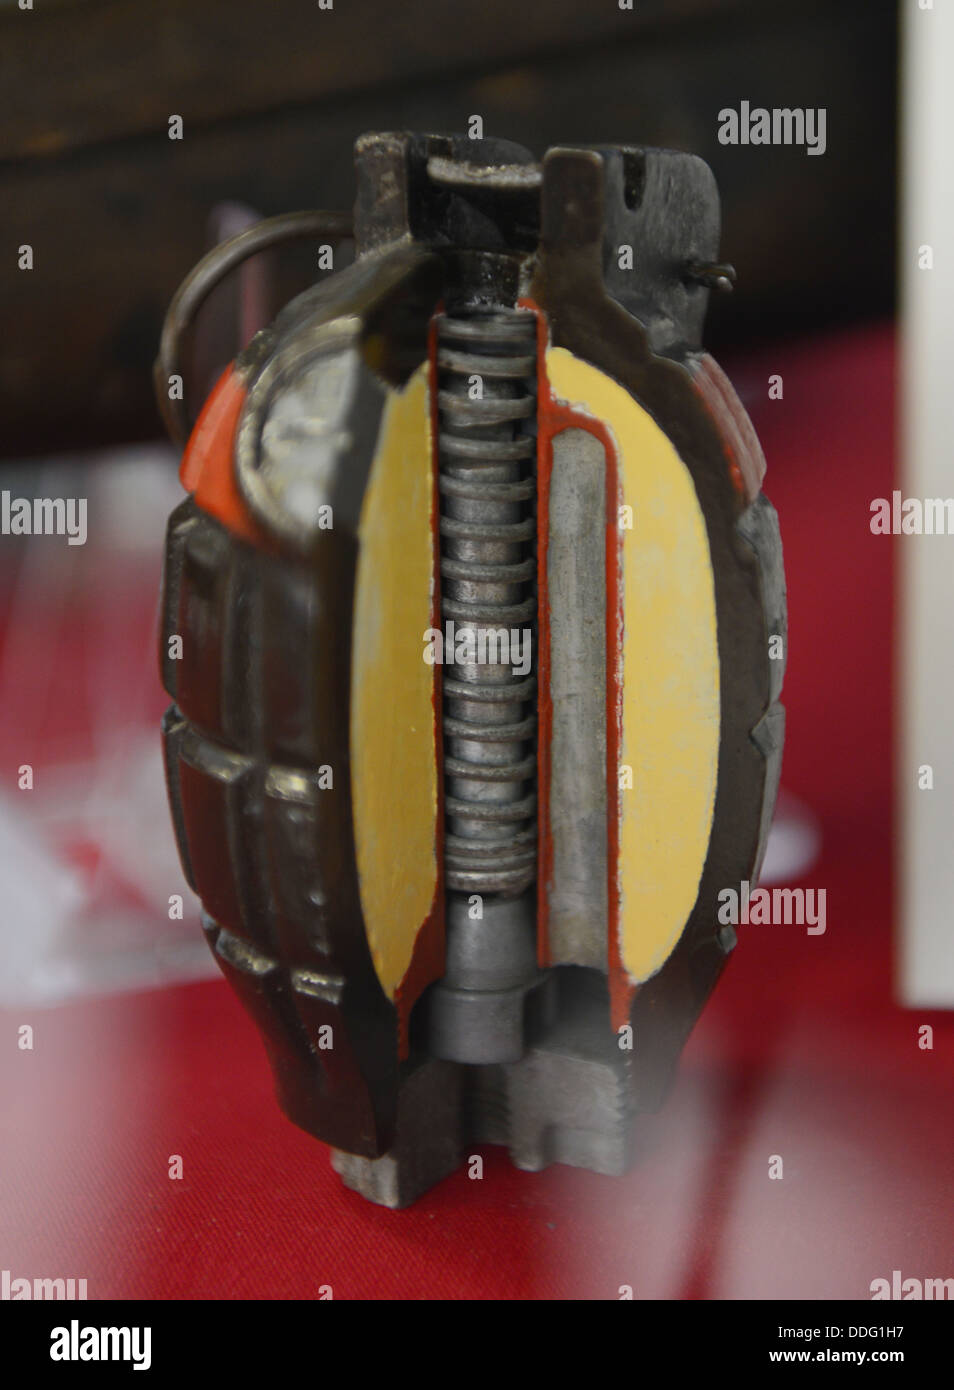 Hand Grenade, Mills Bomb hand grenade, asportate mostrante il funzionamento interno della granata Foto Stock